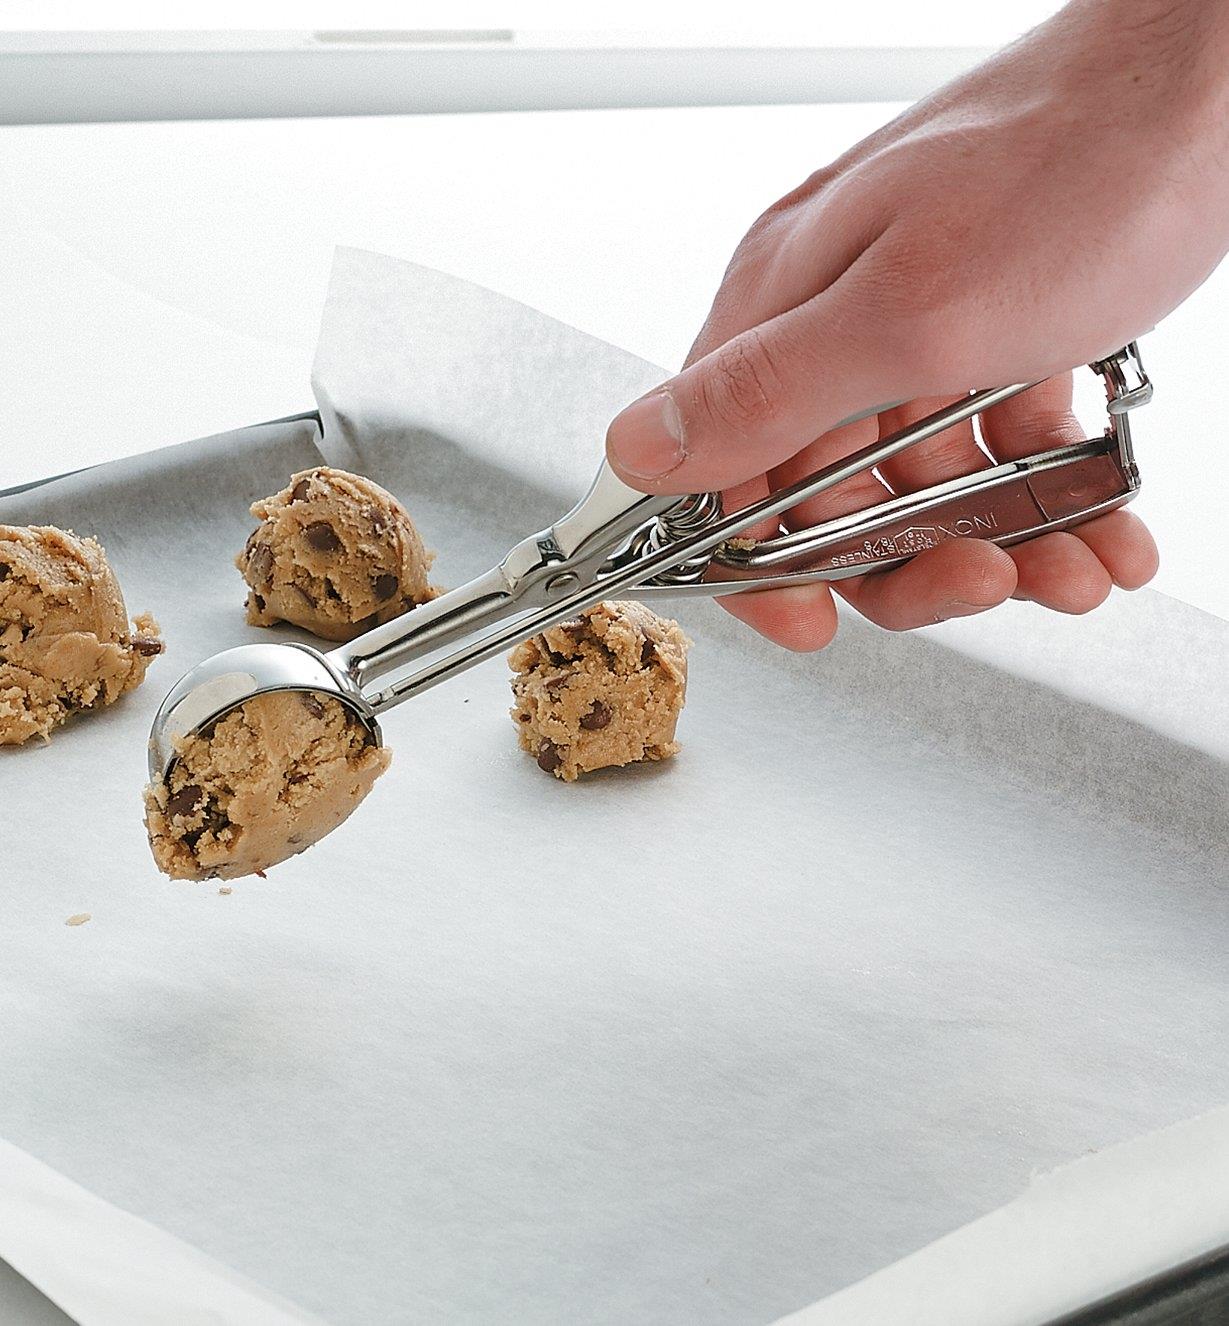 Personne déposant une cuillérée de pâte à biscuits sur une plaque à biscuits tapissée de papier parchemin